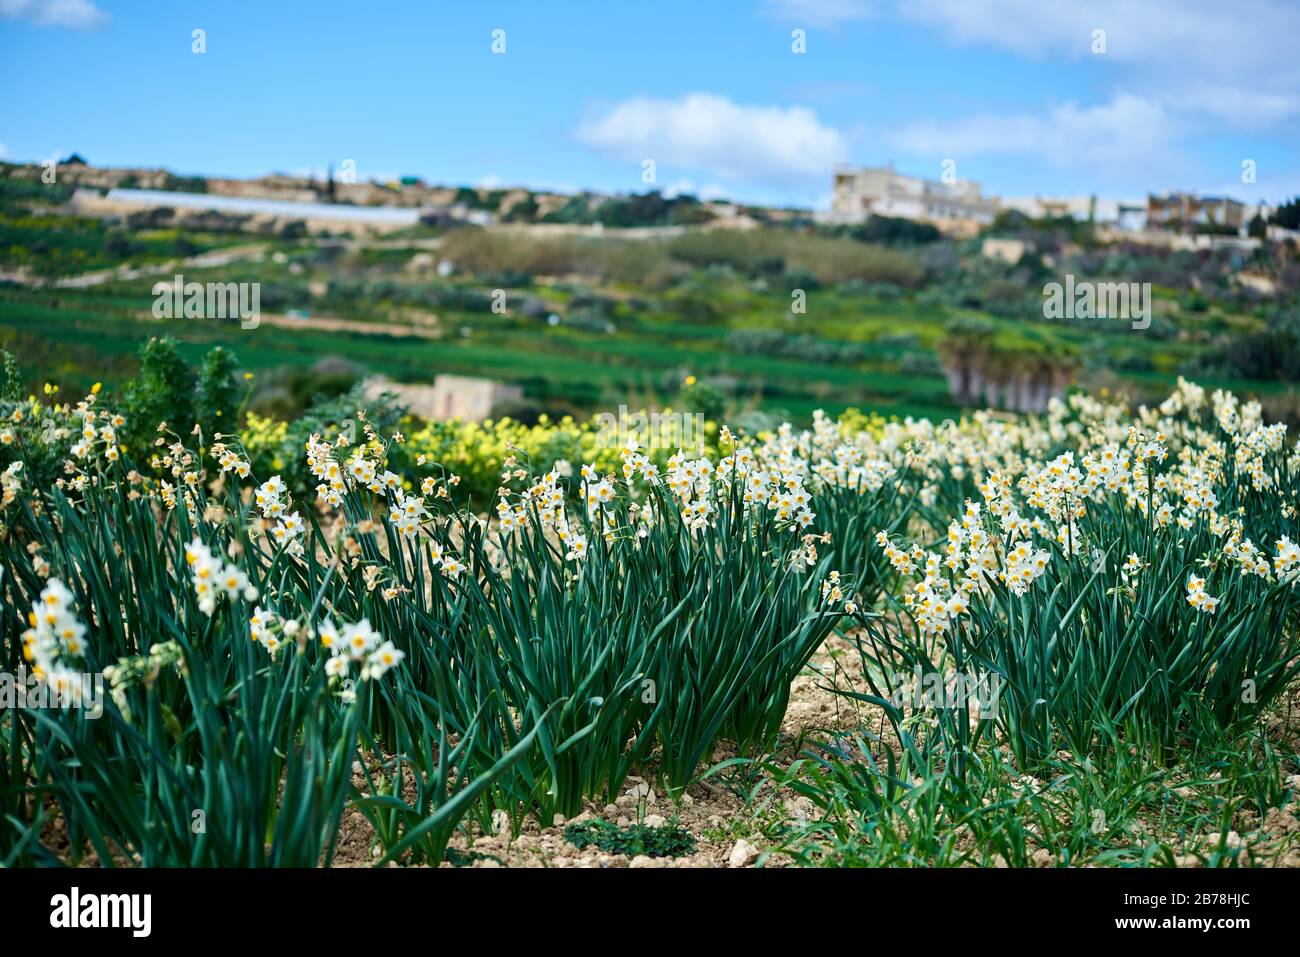 Narcisi primaverili fioriscono sull'isola mediterranea di Gozo, in prossimità del sentiero costiero su una piccola parte di macchia mediterranea Foto Stock